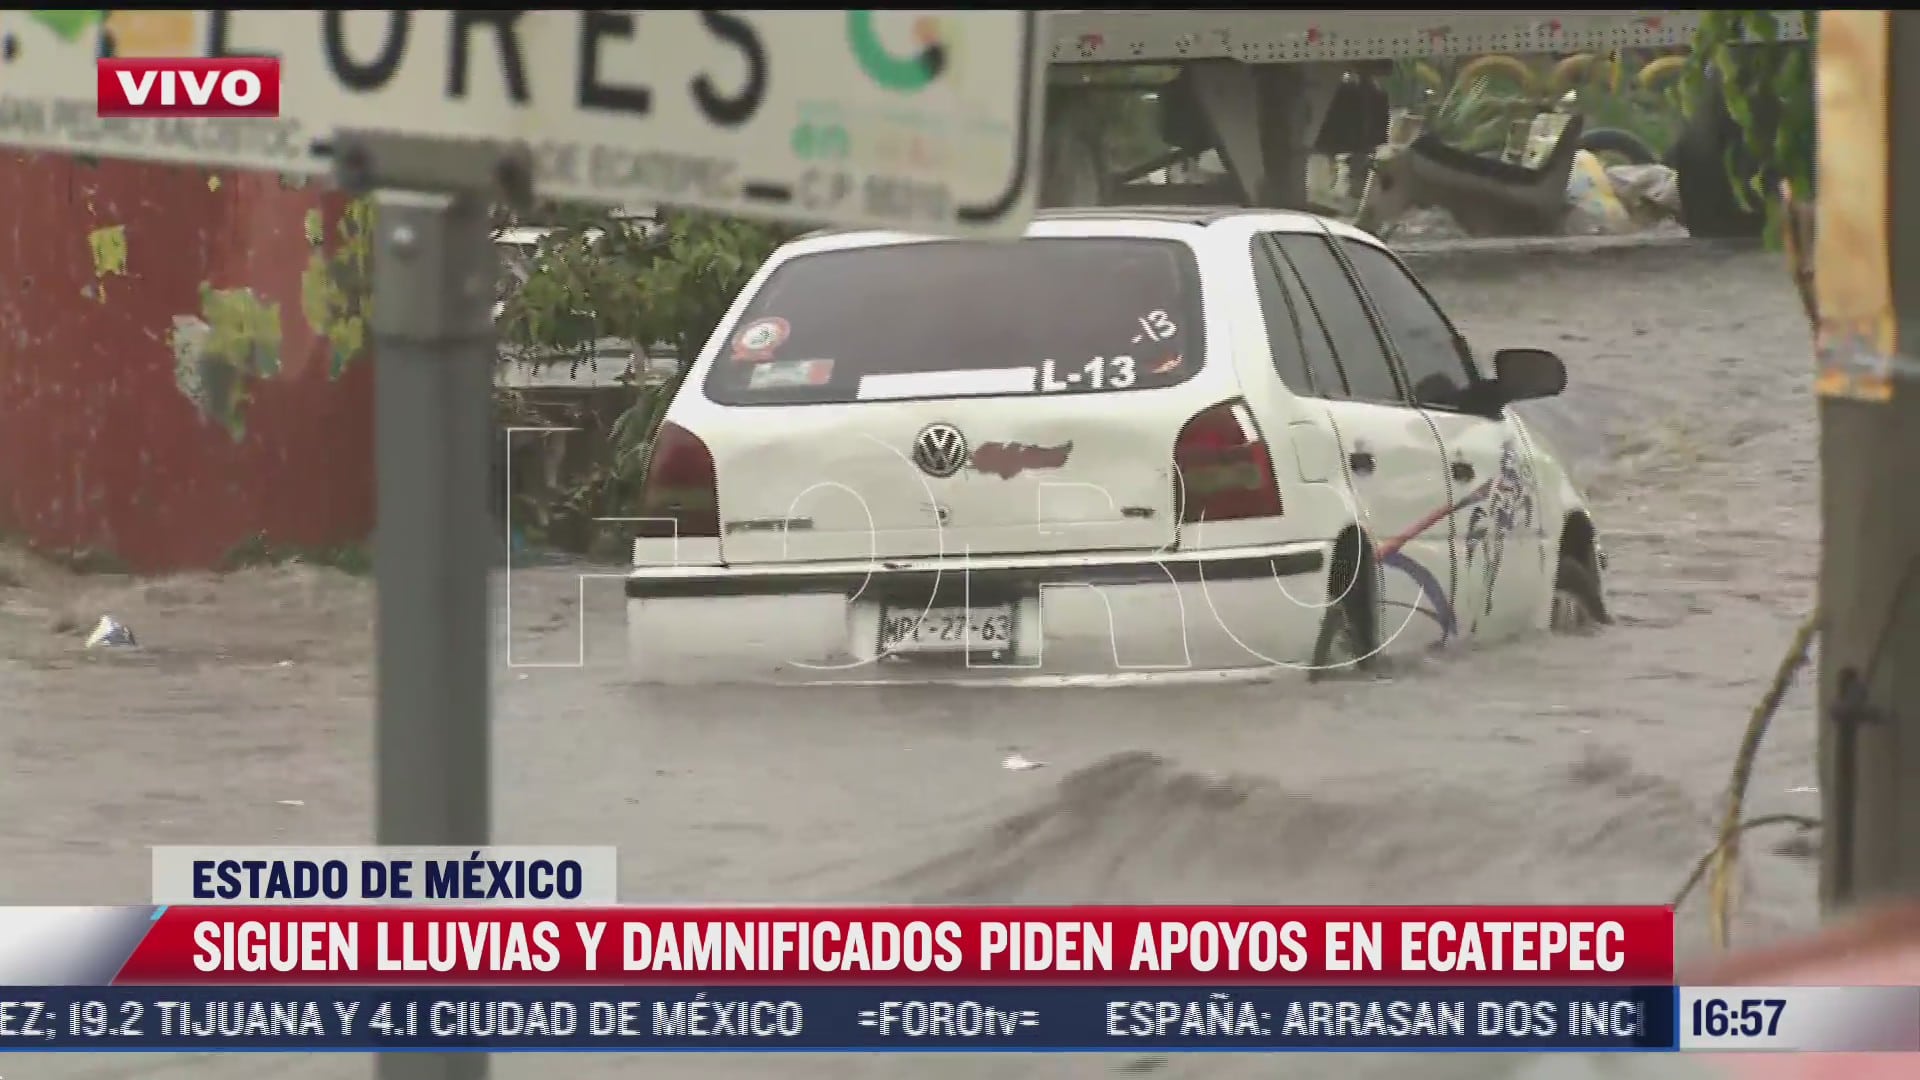 lluvias en ecatepec vuelven a convertir calles en rios